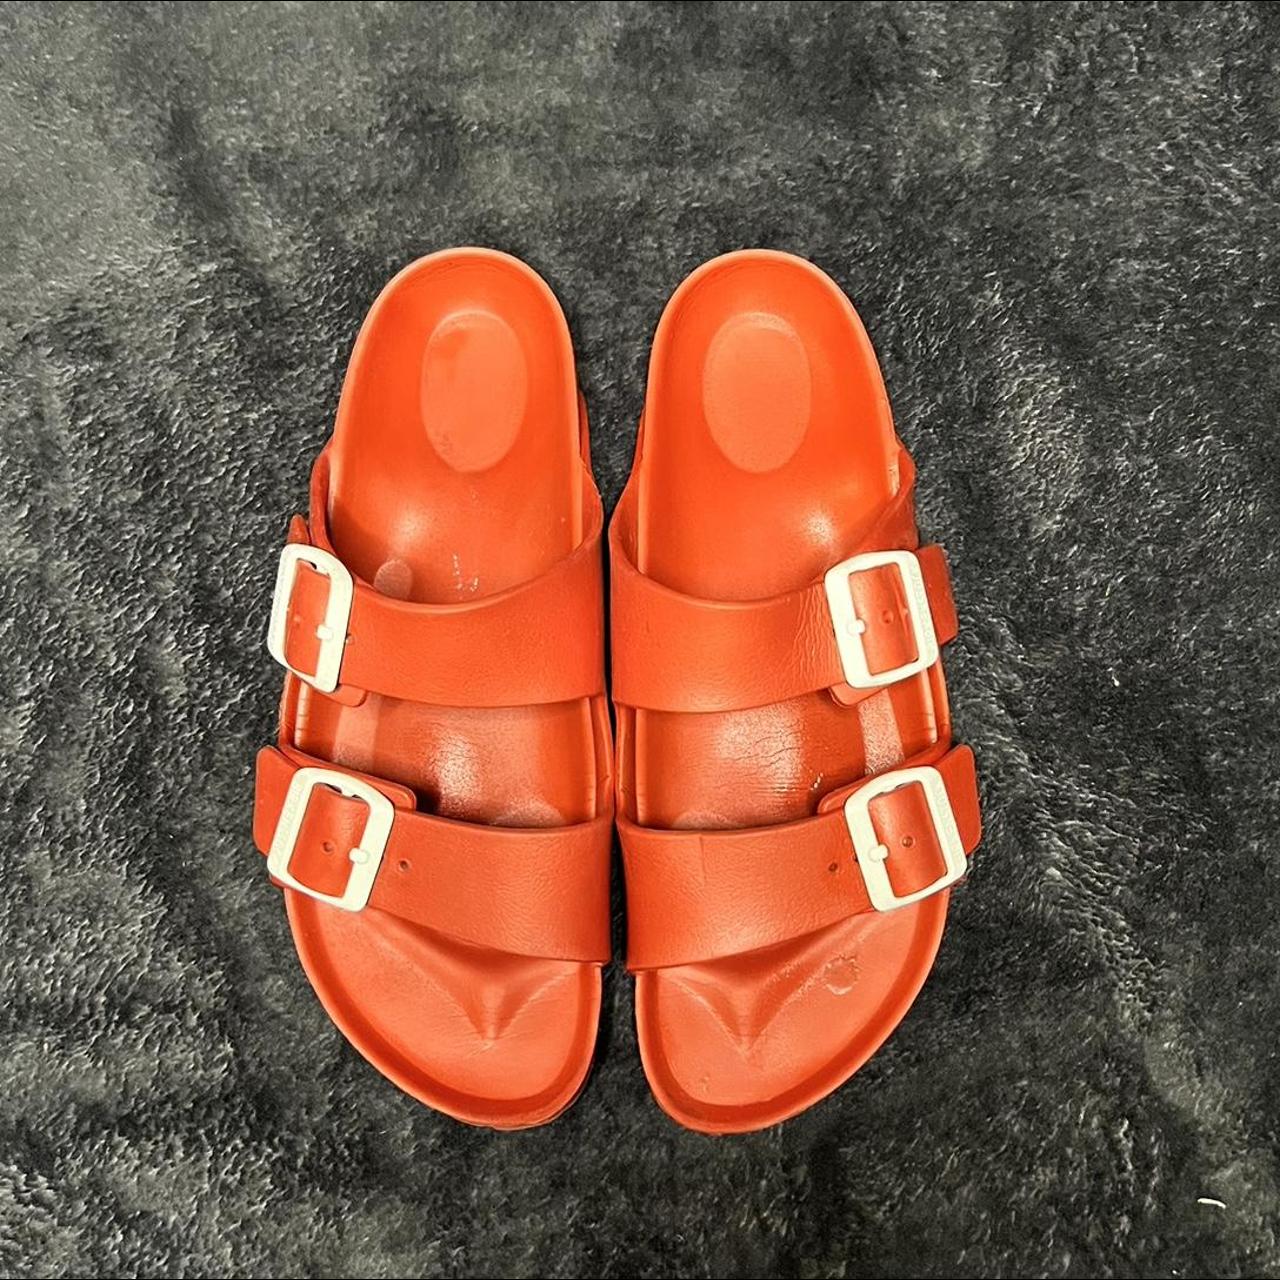 Red Foam Birkenstocks ️ Foam Birkenstock sandals... - Depop